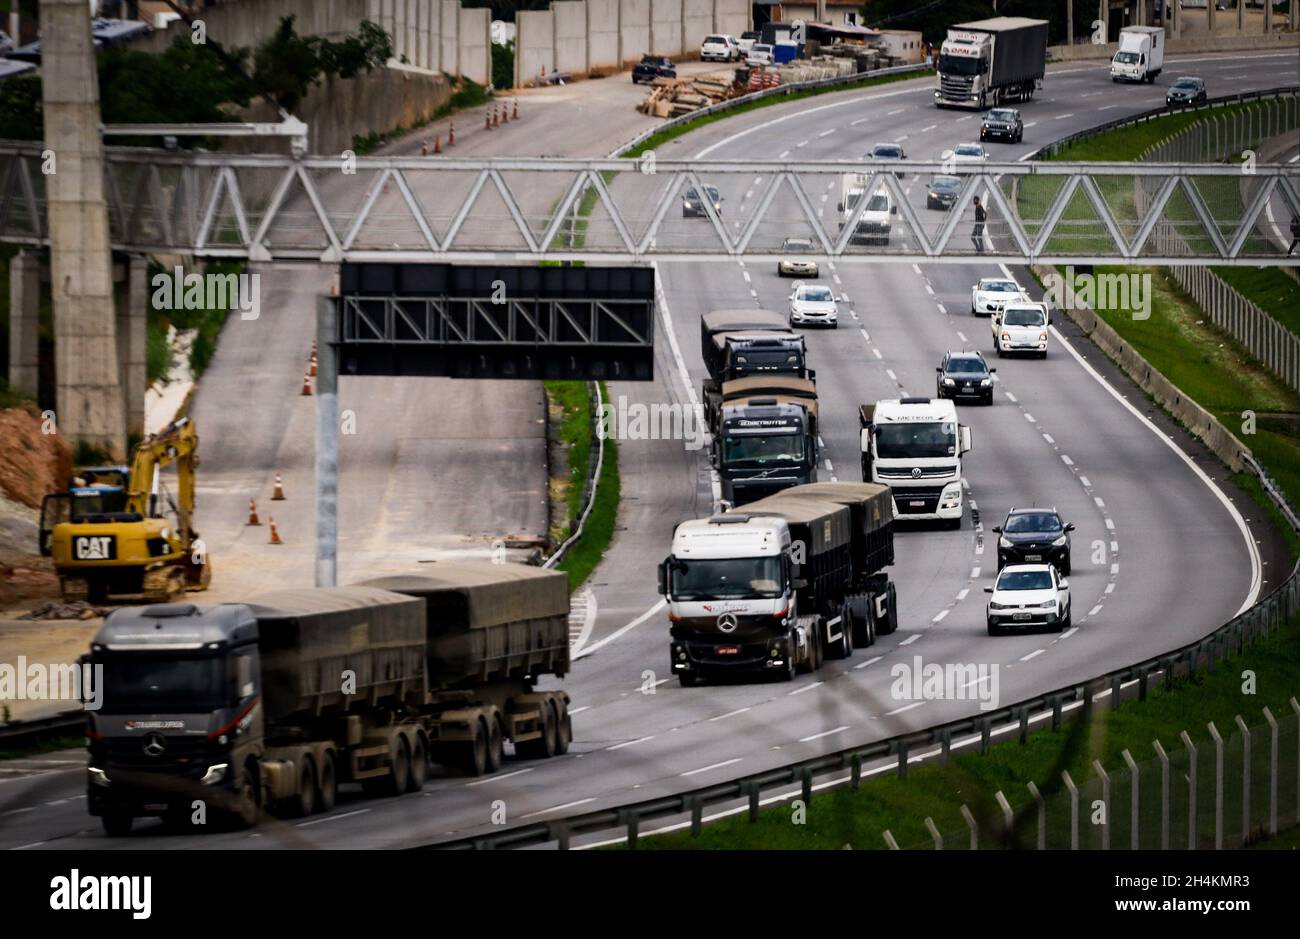 São PAULO, SP - 03.11.2021: CAMINHONEIROS CONSEGUEM DERRUBAR LIMINARES - das Bundeslandesgericht der 1. Region, hat 11 Verfügungen, die die Sperrung von Autobahnen während des Streiks von Lkw-Fahrern im ganzen Land verhinderten, auf Antrag der Brasilianischen Vereinigung der Kraftfahrzeugführer (ABRAVA) abgelehnt. Nach Angaben des Führers der Lkw-Fahrer, Chorão, sagte am vergangenen Dienstag (2), dass sie nach dem Sturz der anderen Verfügungen in den Staaten von São Paulo, Rio de Janeiro, Rio Grande do Sul und Santa Catarina laufen (Foto: Aloisio Mauricio/Fotoarena) Stockfoto